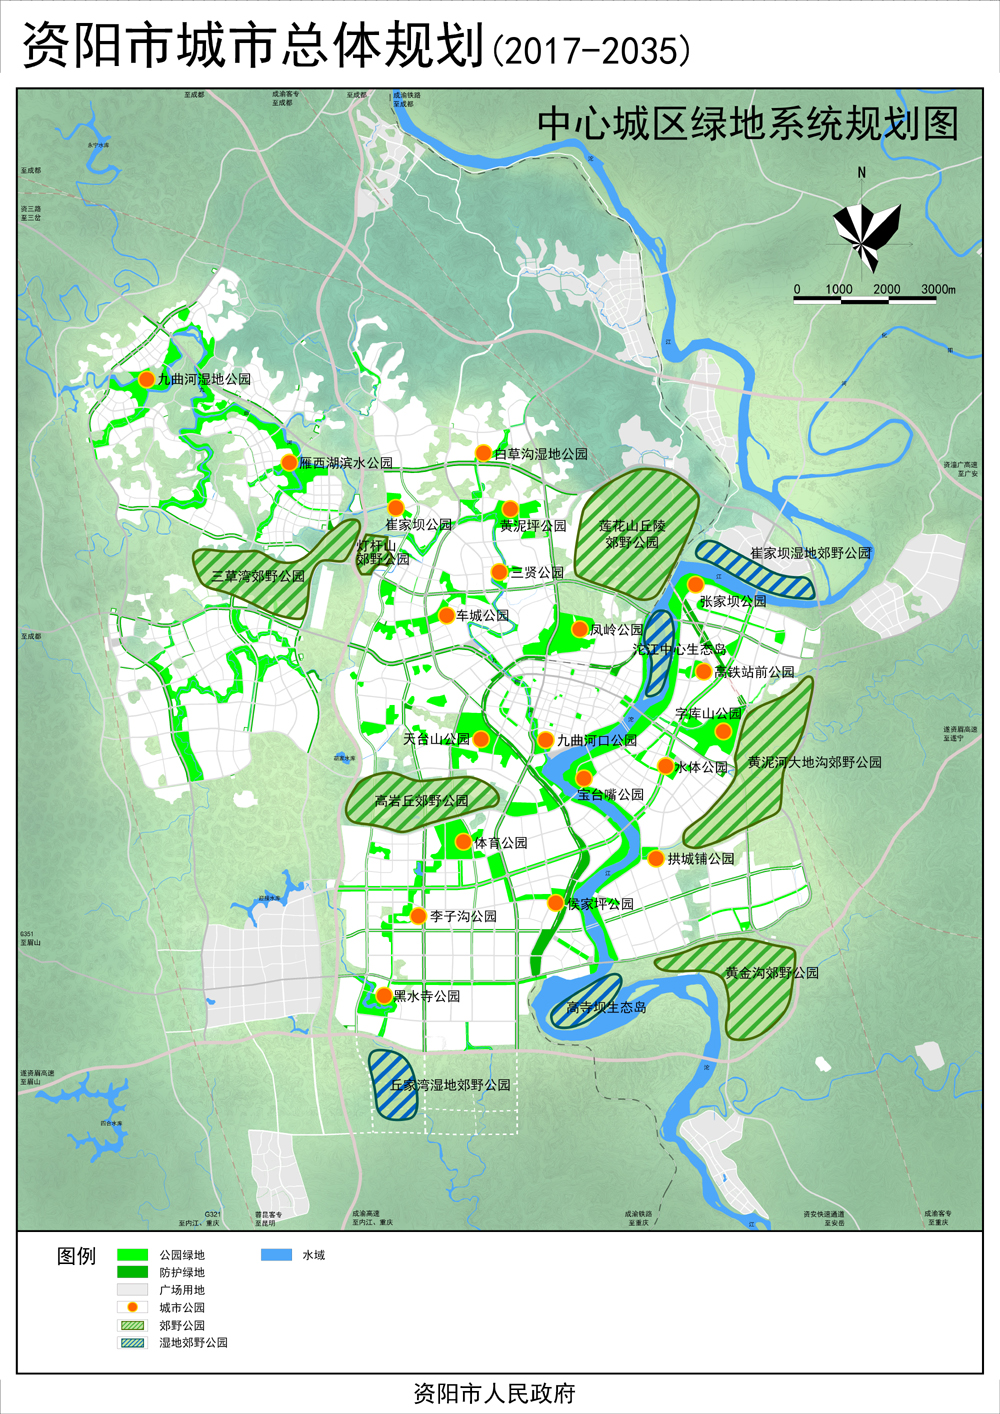 资阳市市域城镇体系规划和资阳市城市总体规划(2017-2035)草案